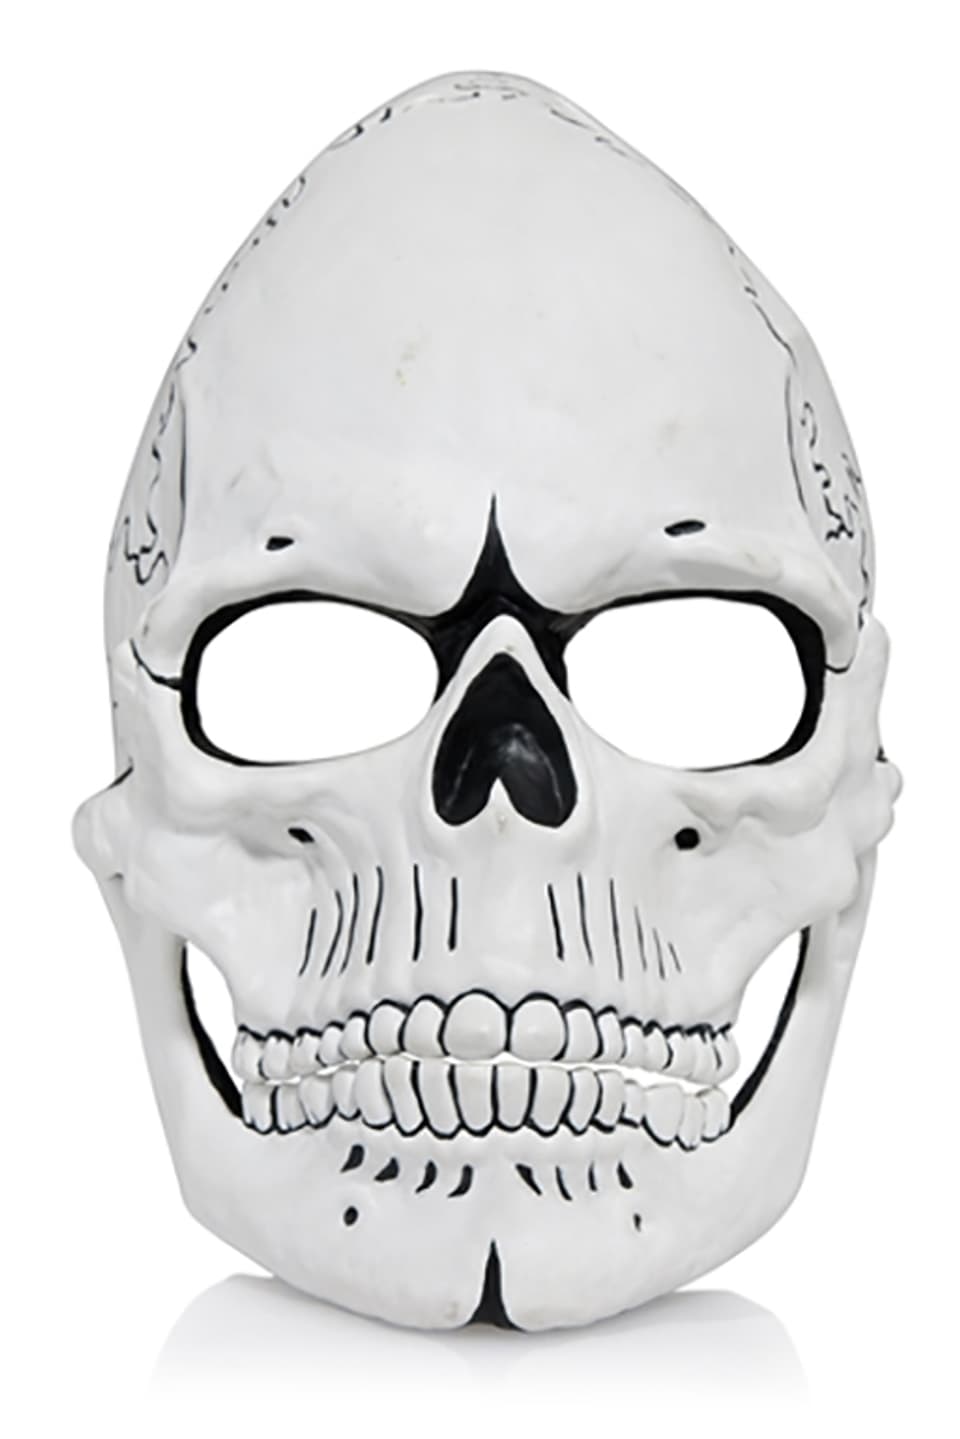 Die Totenkopfmaske, die Daniel Craig getragen hat